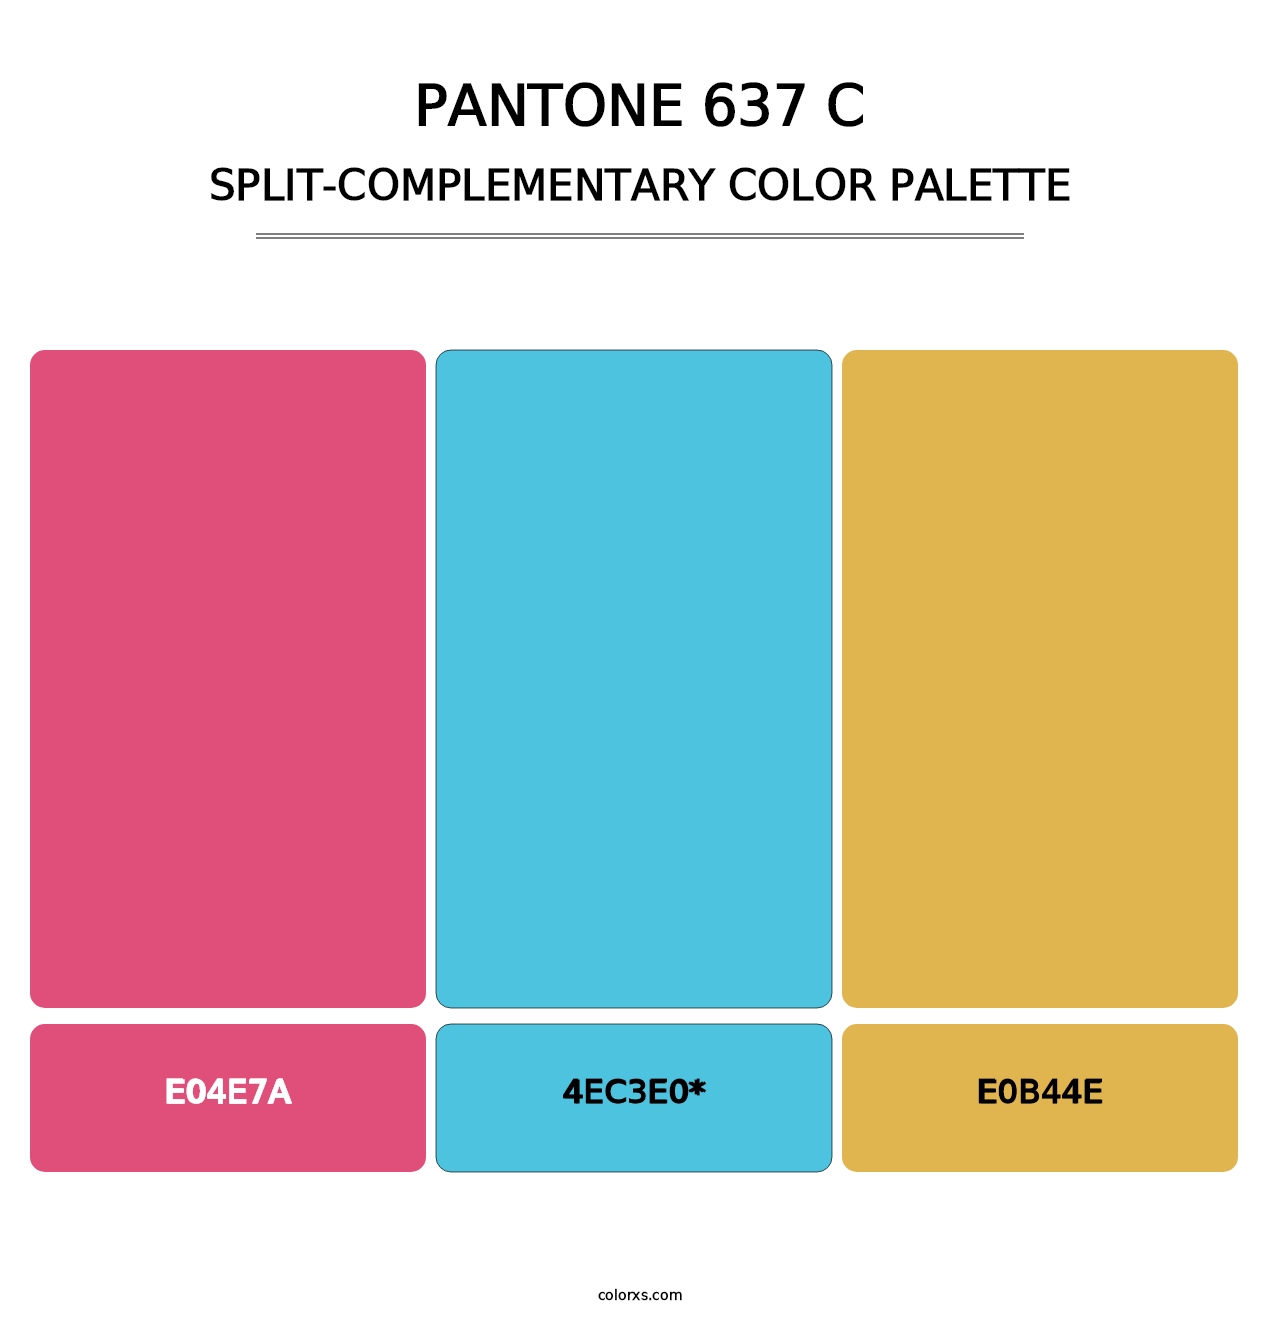 PANTONE 637 C - Split-Complementary Color Palette